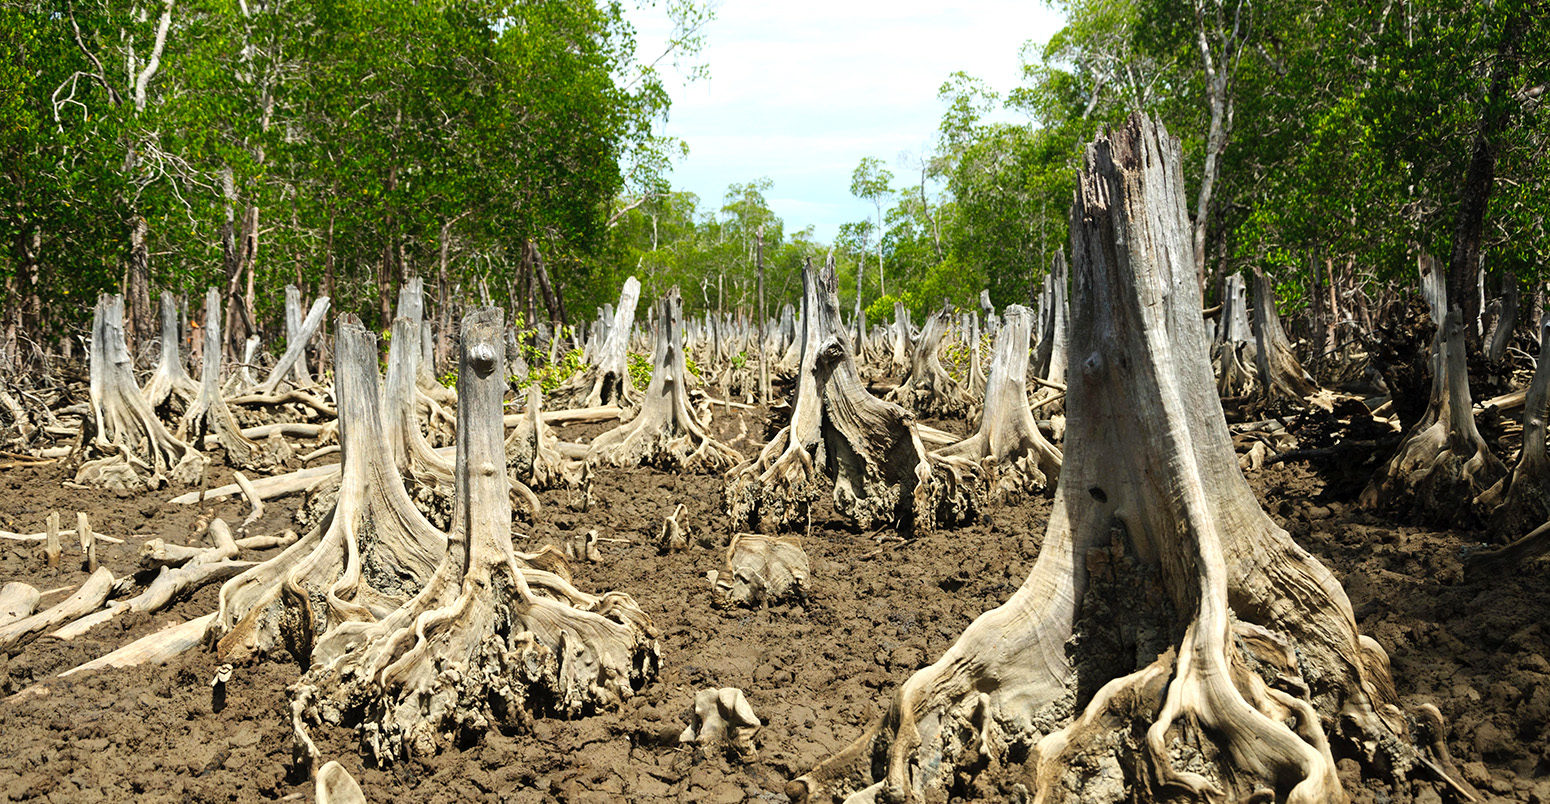 在红树林被砍伐的地方。信贷:奥利弗s -马达加斯加一般除股票的照片。EDW769